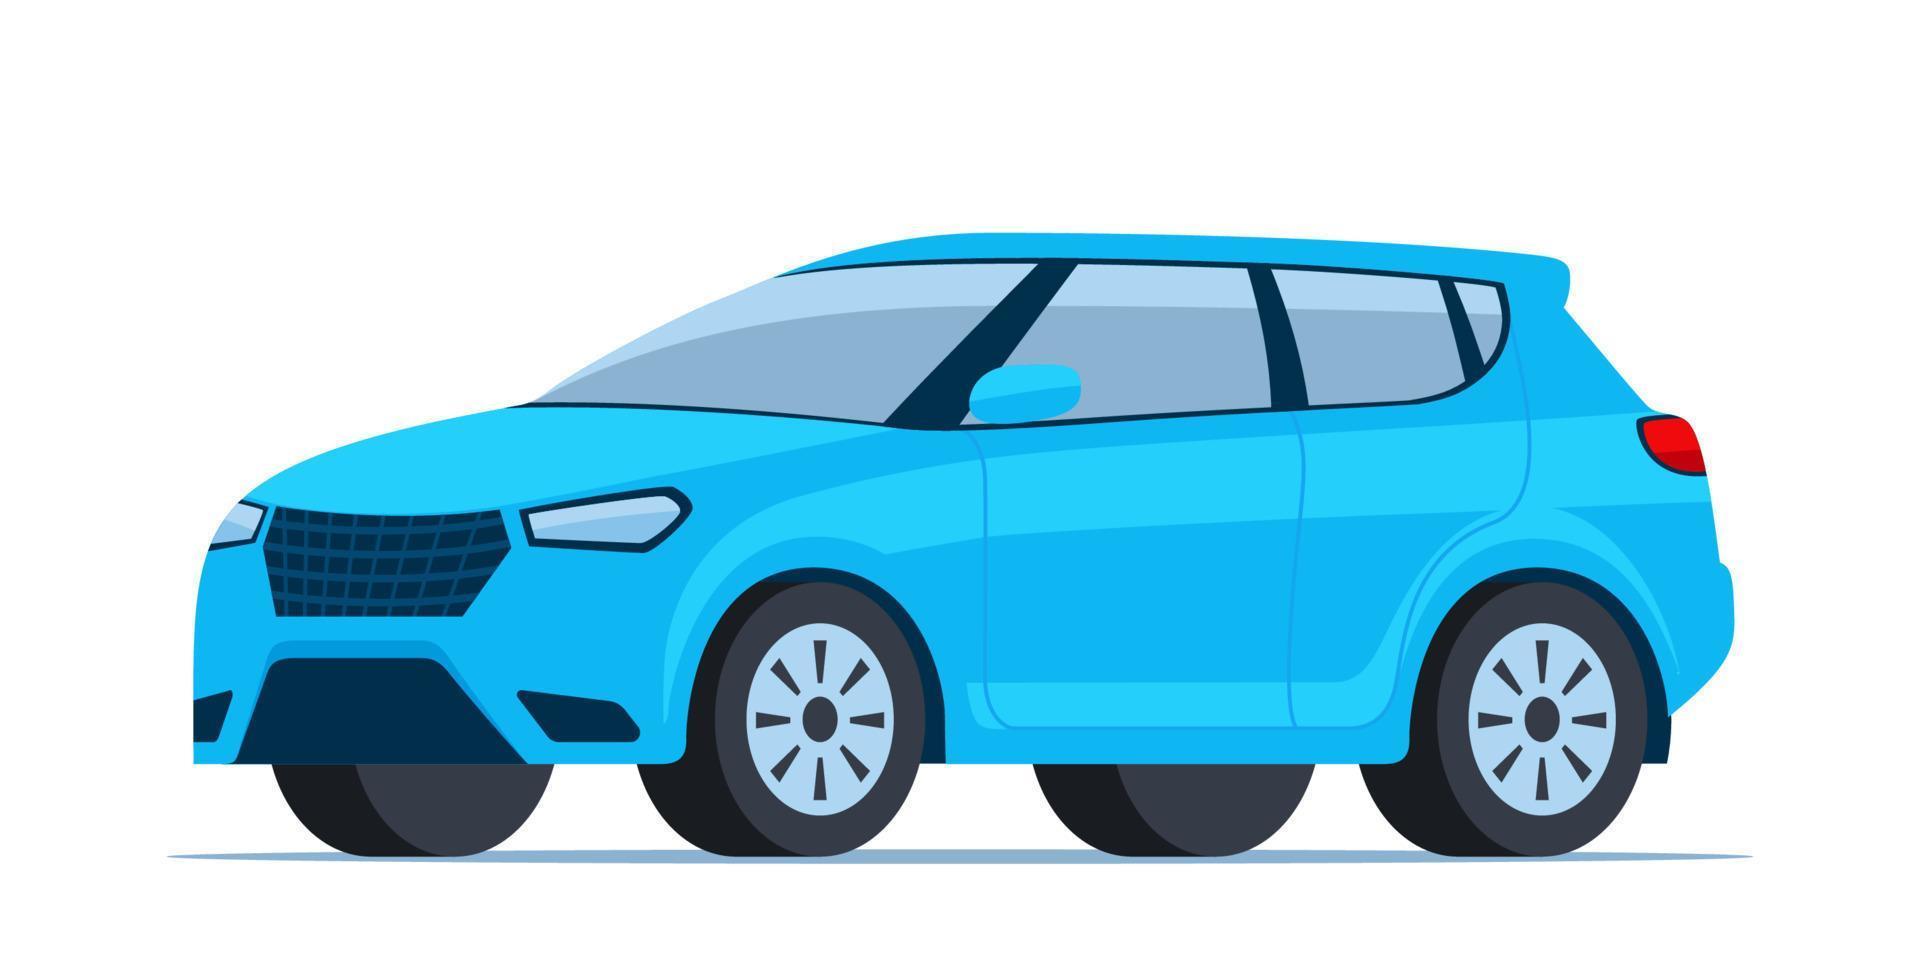 Blau modern suv Auto, Seite Sicht. Vektor Illustration.